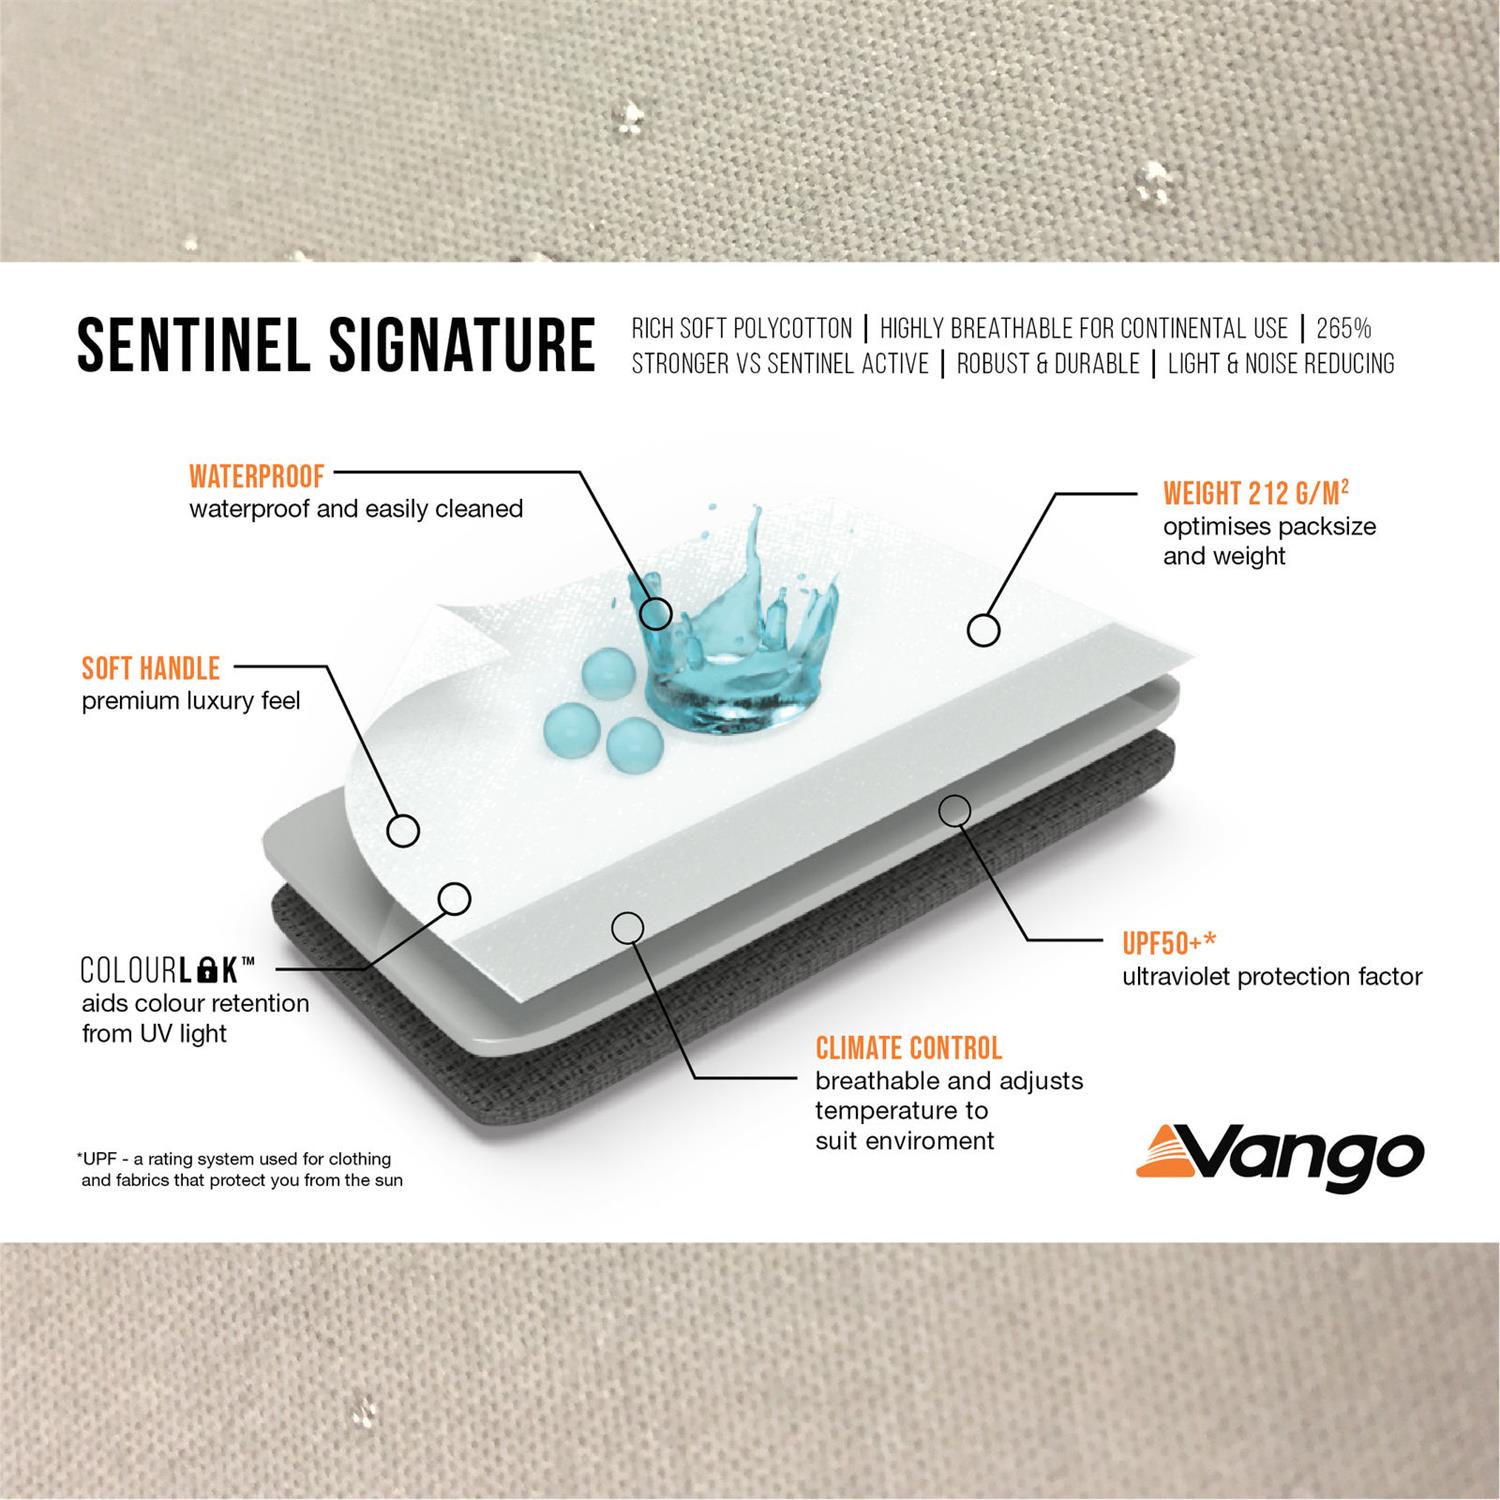 Vango specs for Sentinel Signature.